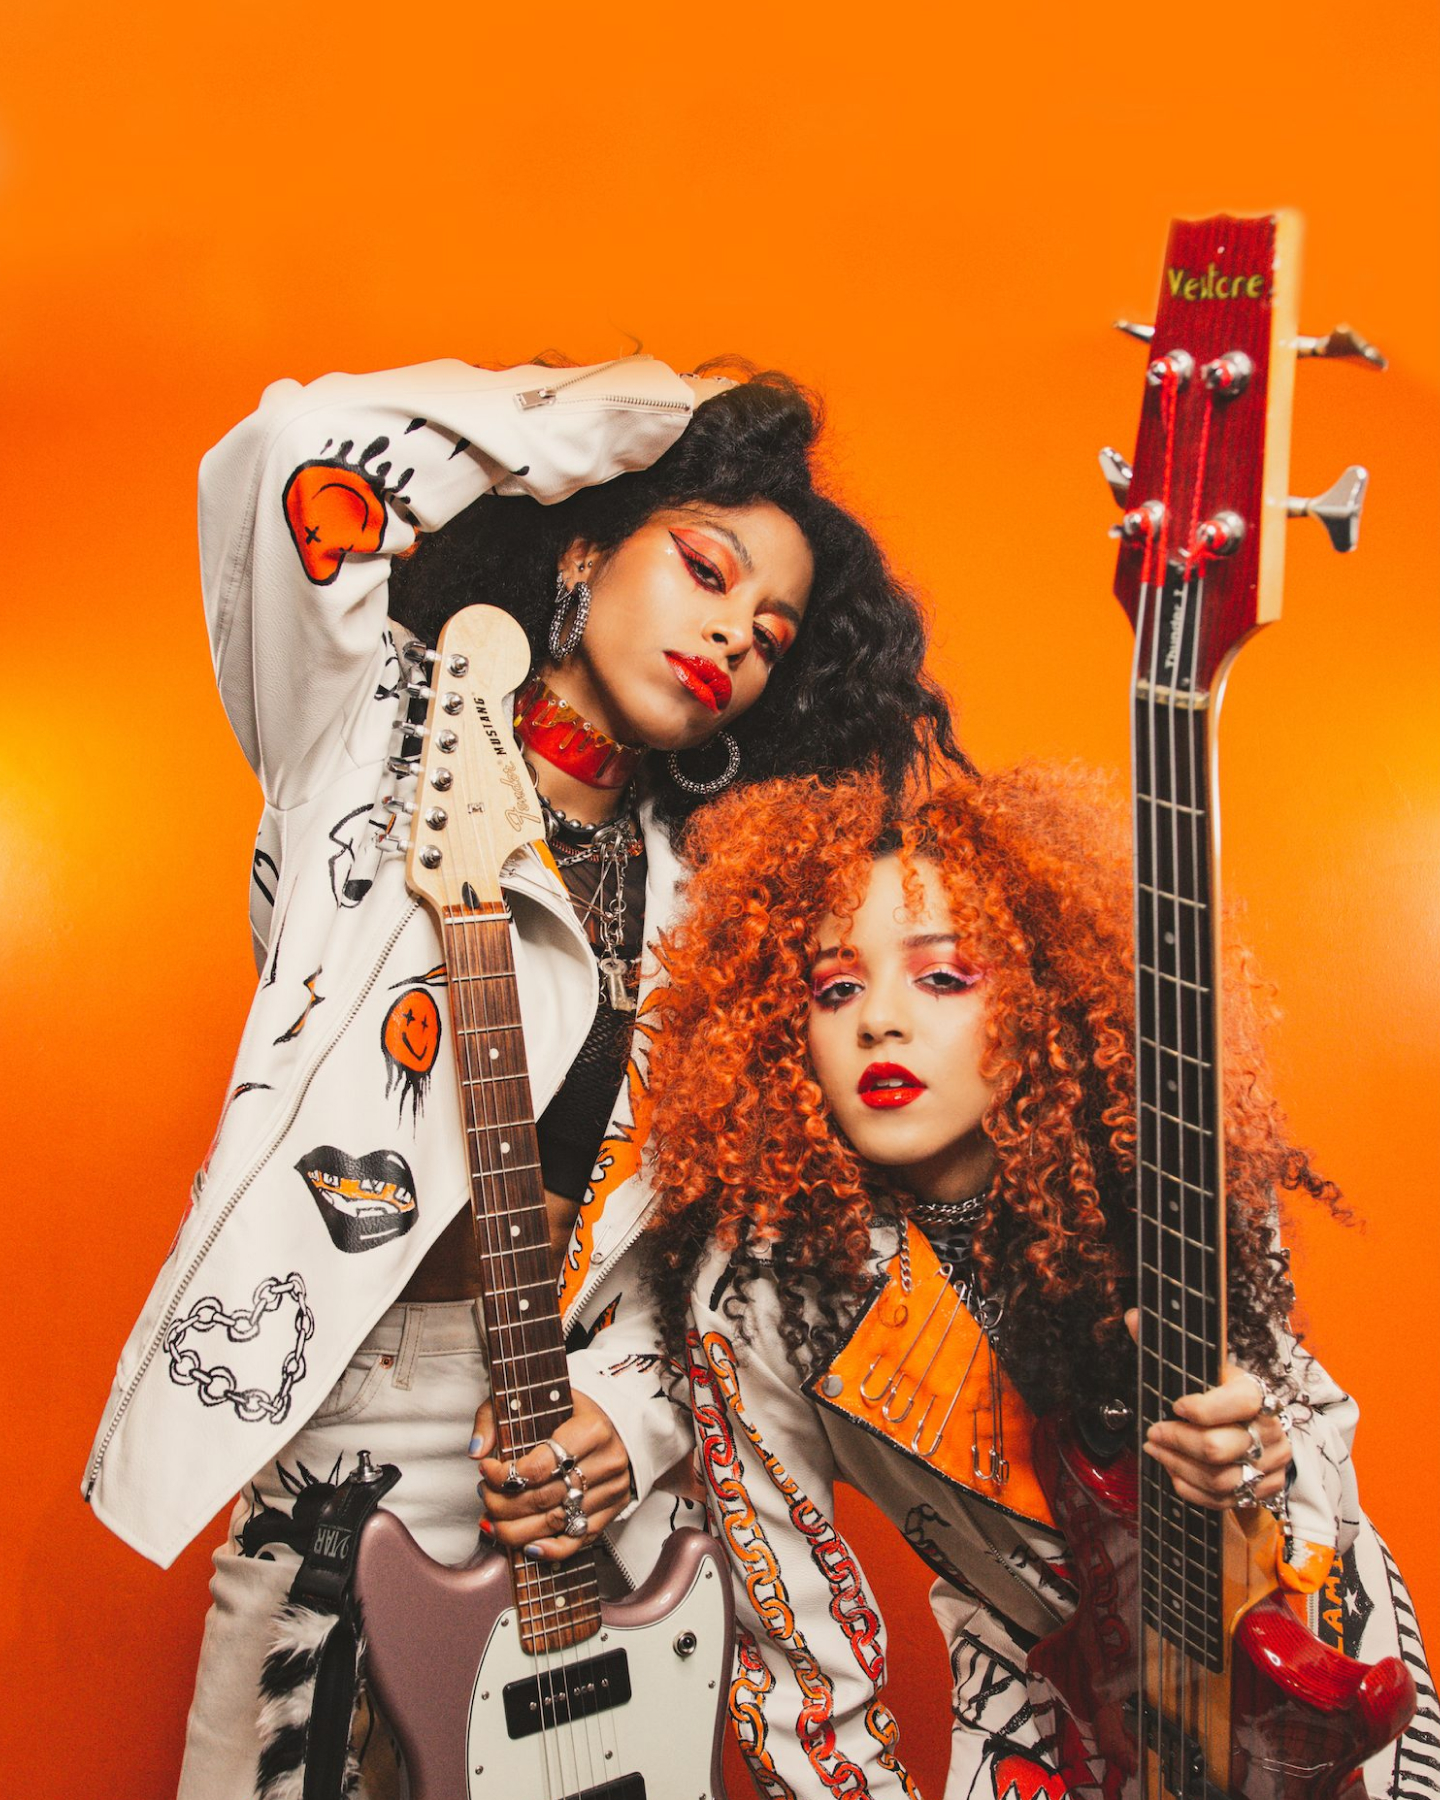 Dos elegantes músicos, uno con chaqueta blanca y el otro con blusa naranja, posan con guitarras eléctricas sobre un fondo naranja.